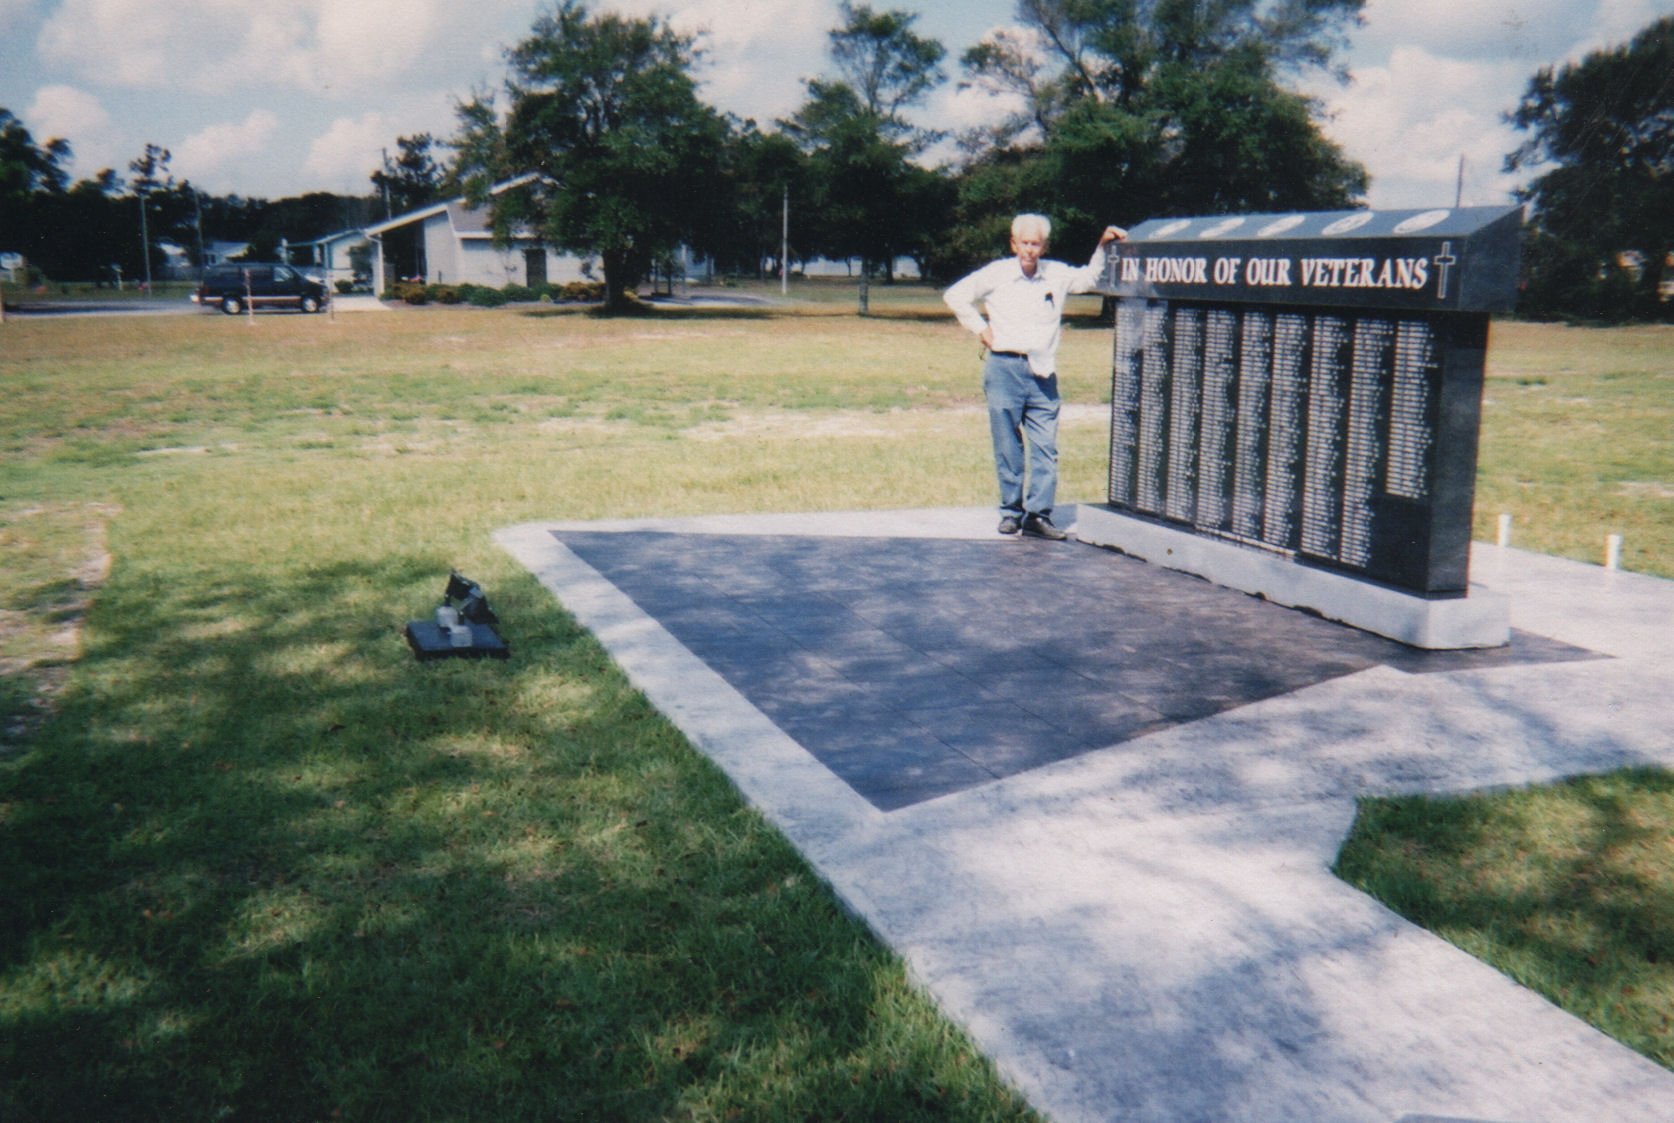 Veteran memorial